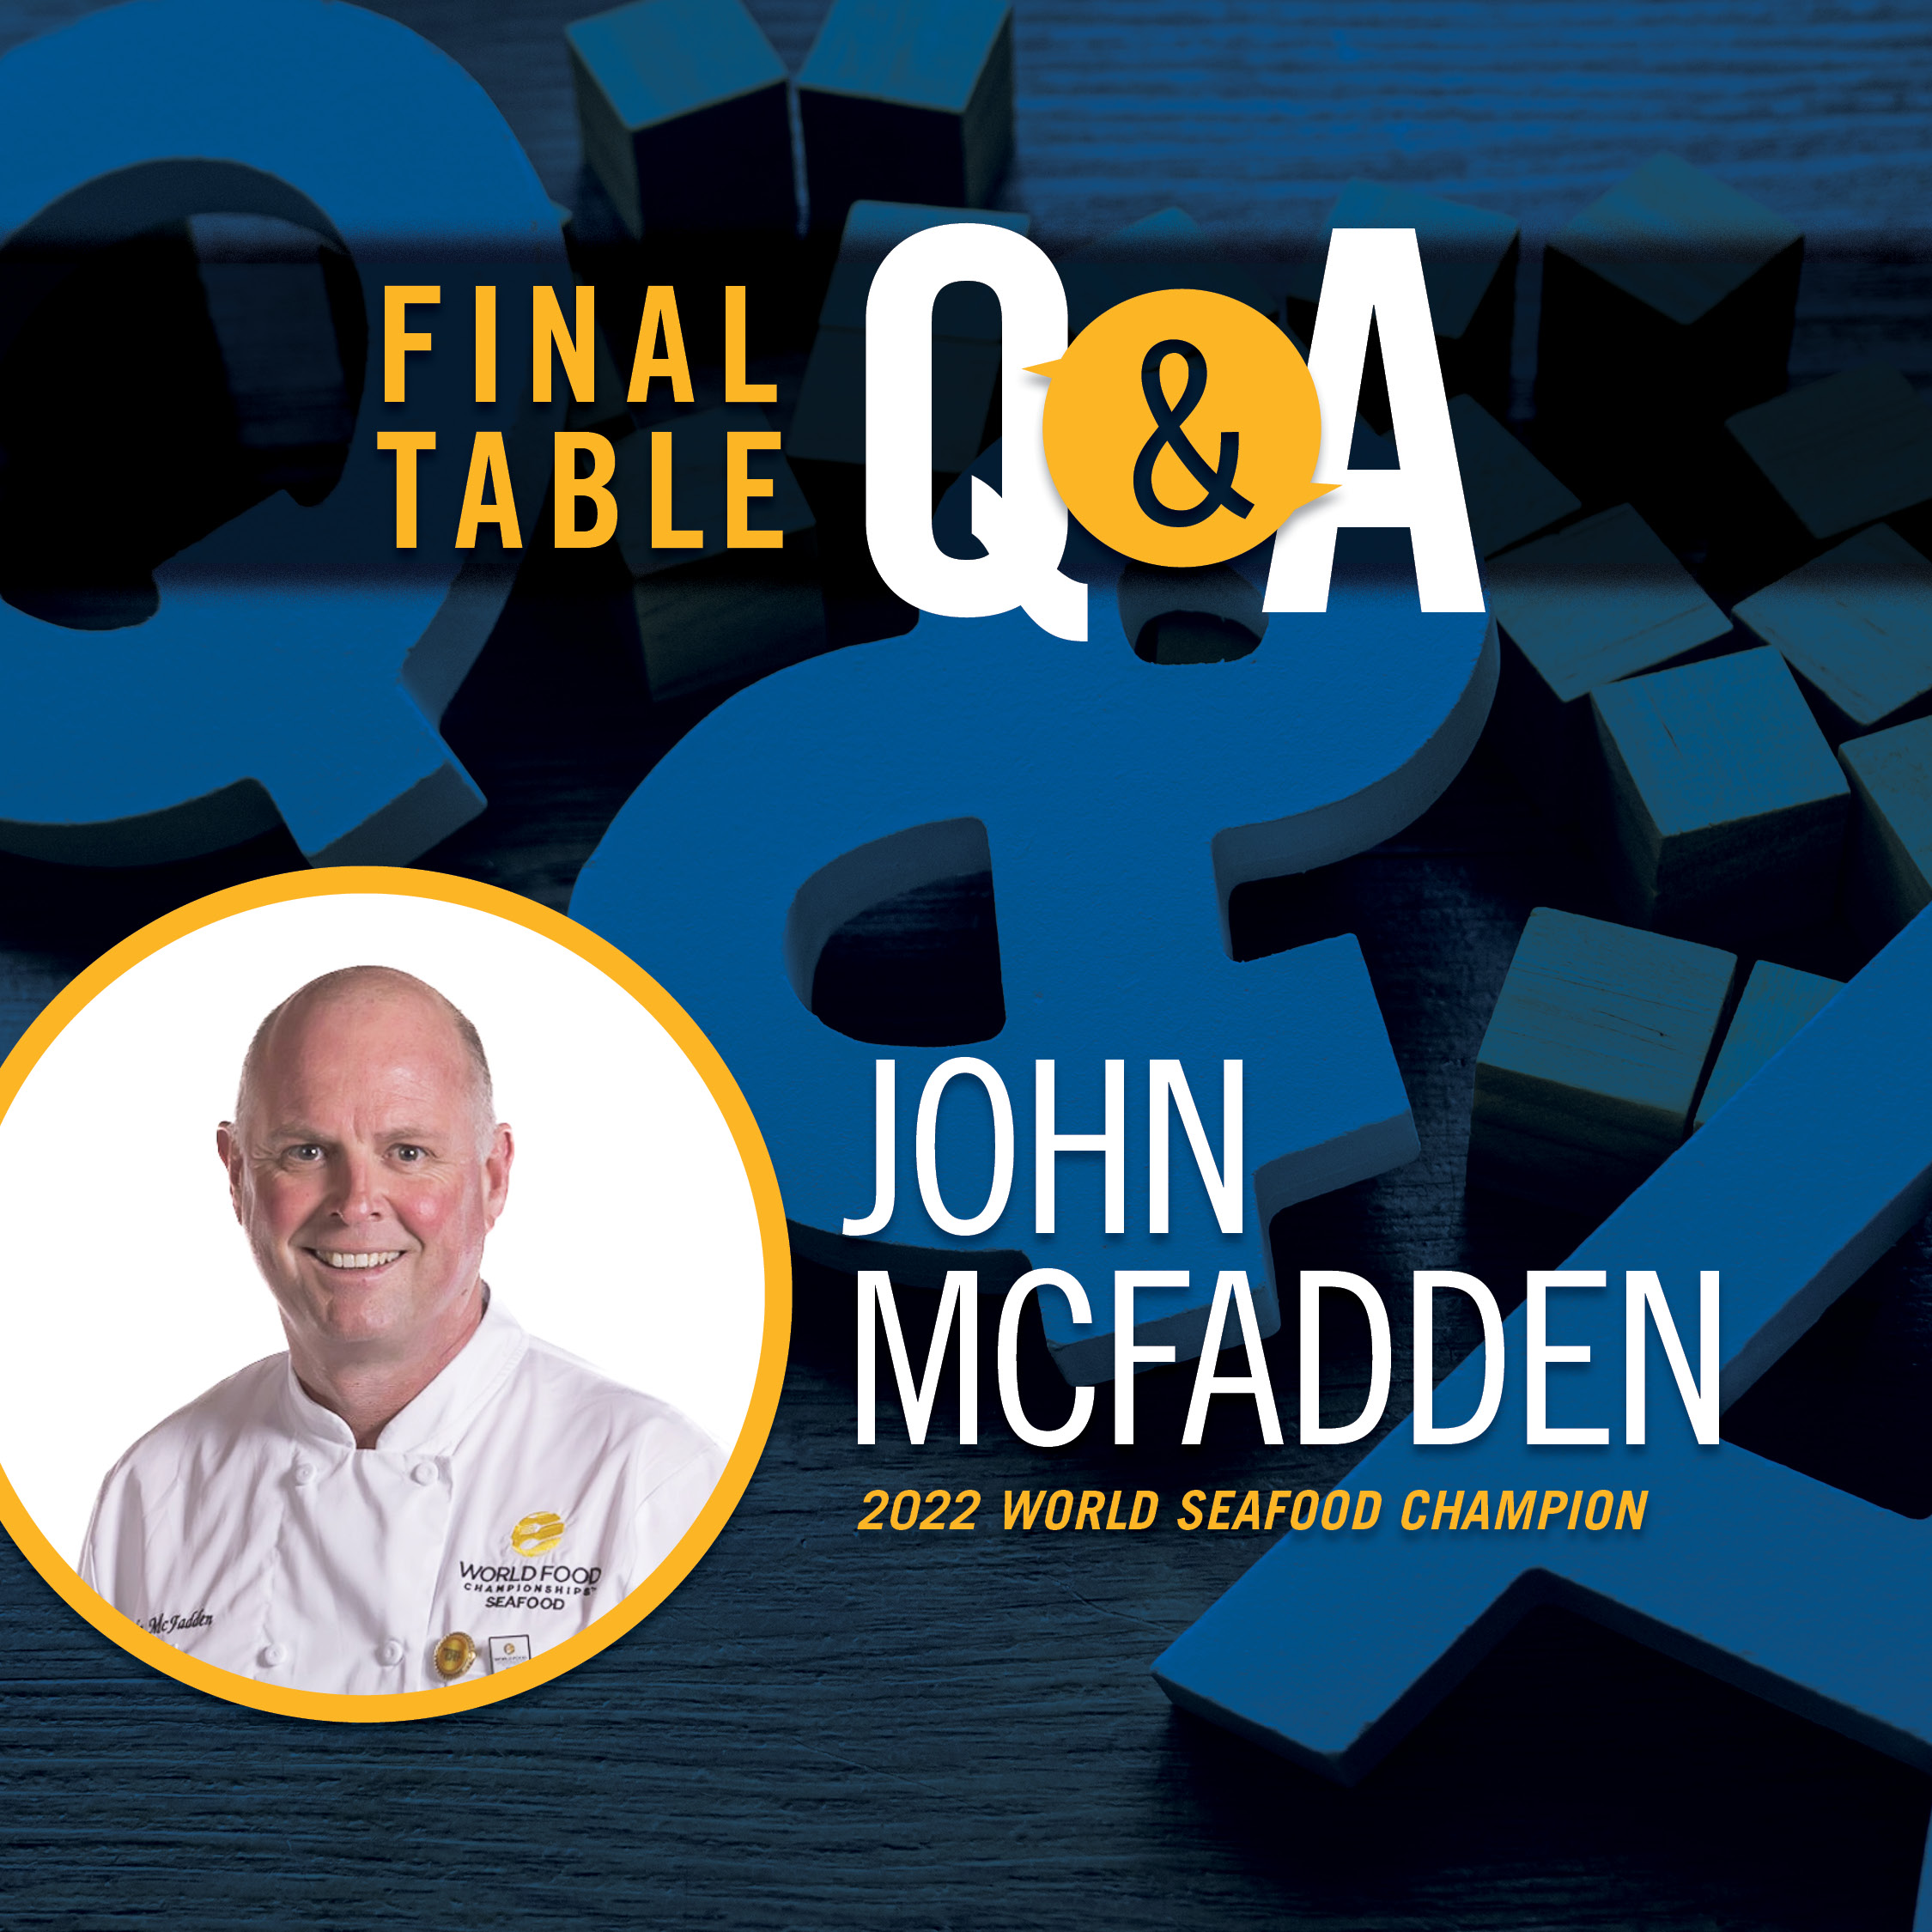 Final Table Q&As - John McFadden